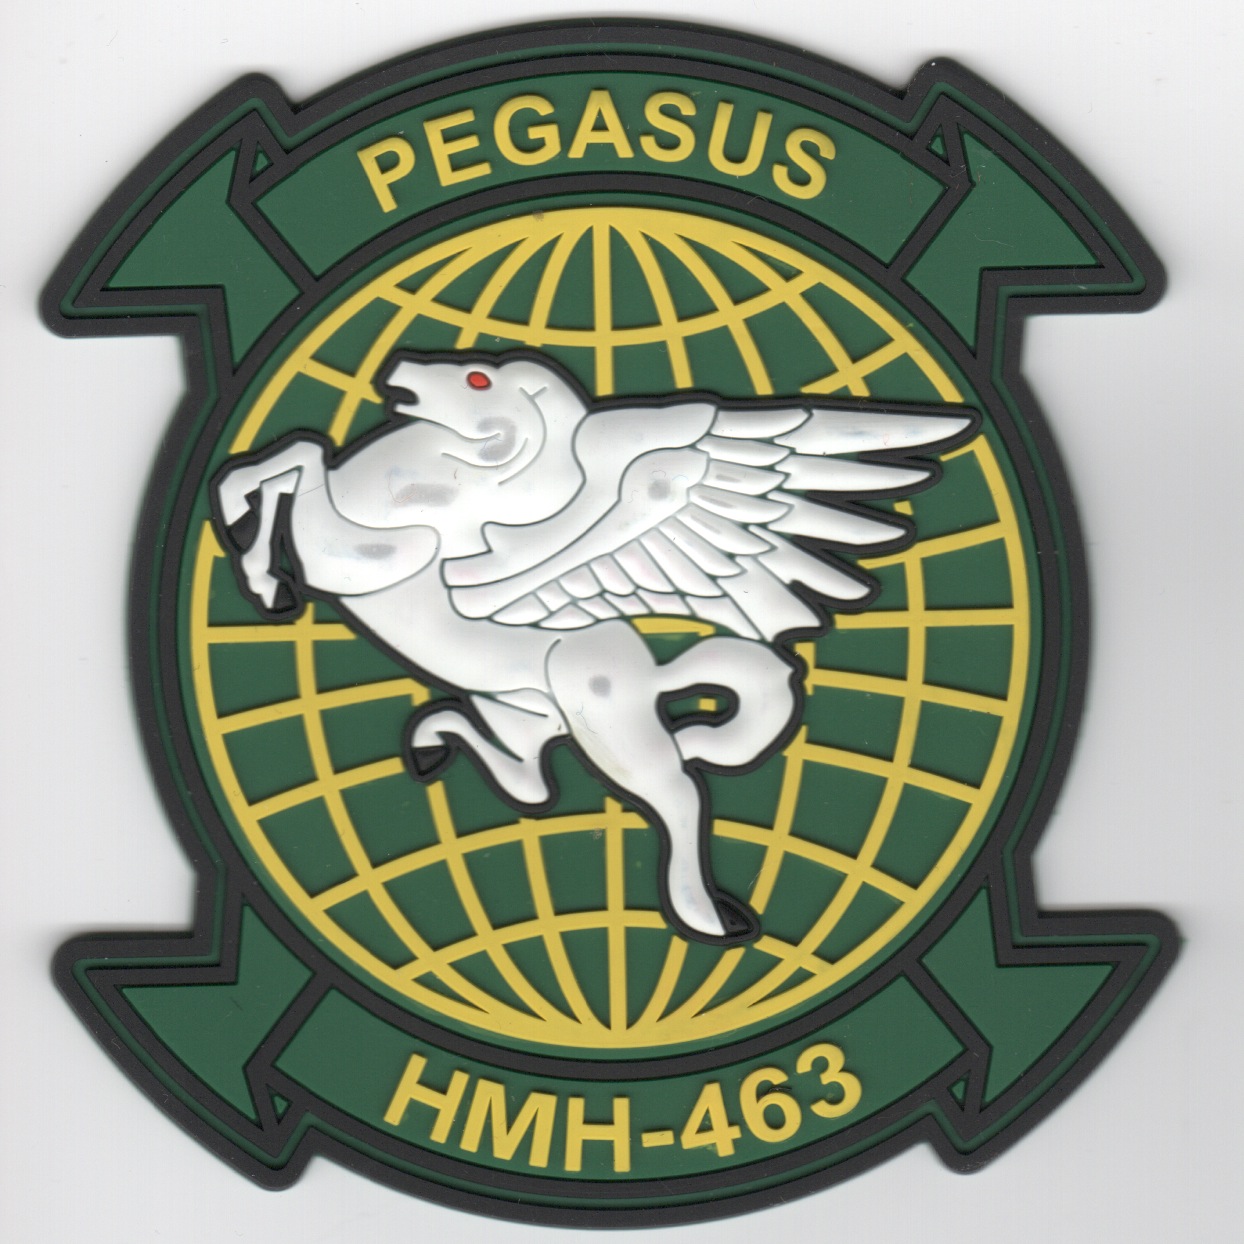 HMH-463 Squadron Patch (Green/PVC)